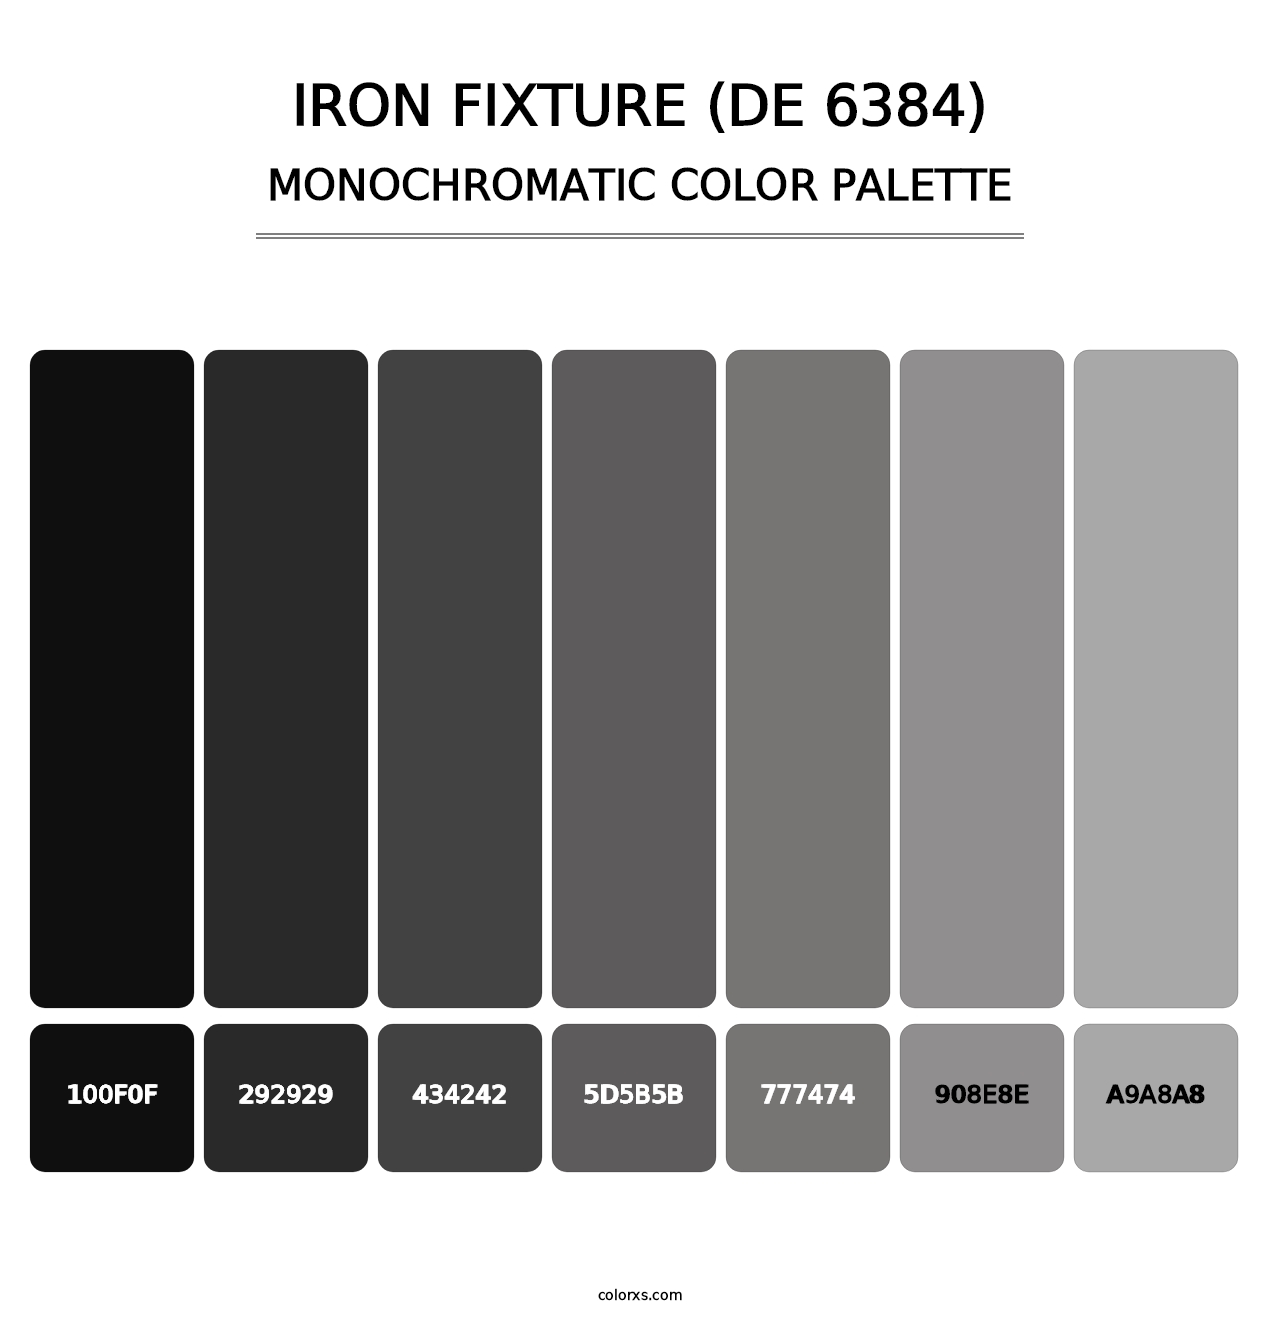 Iron Fixture (DE 6384) - Monochromatic Color Palette